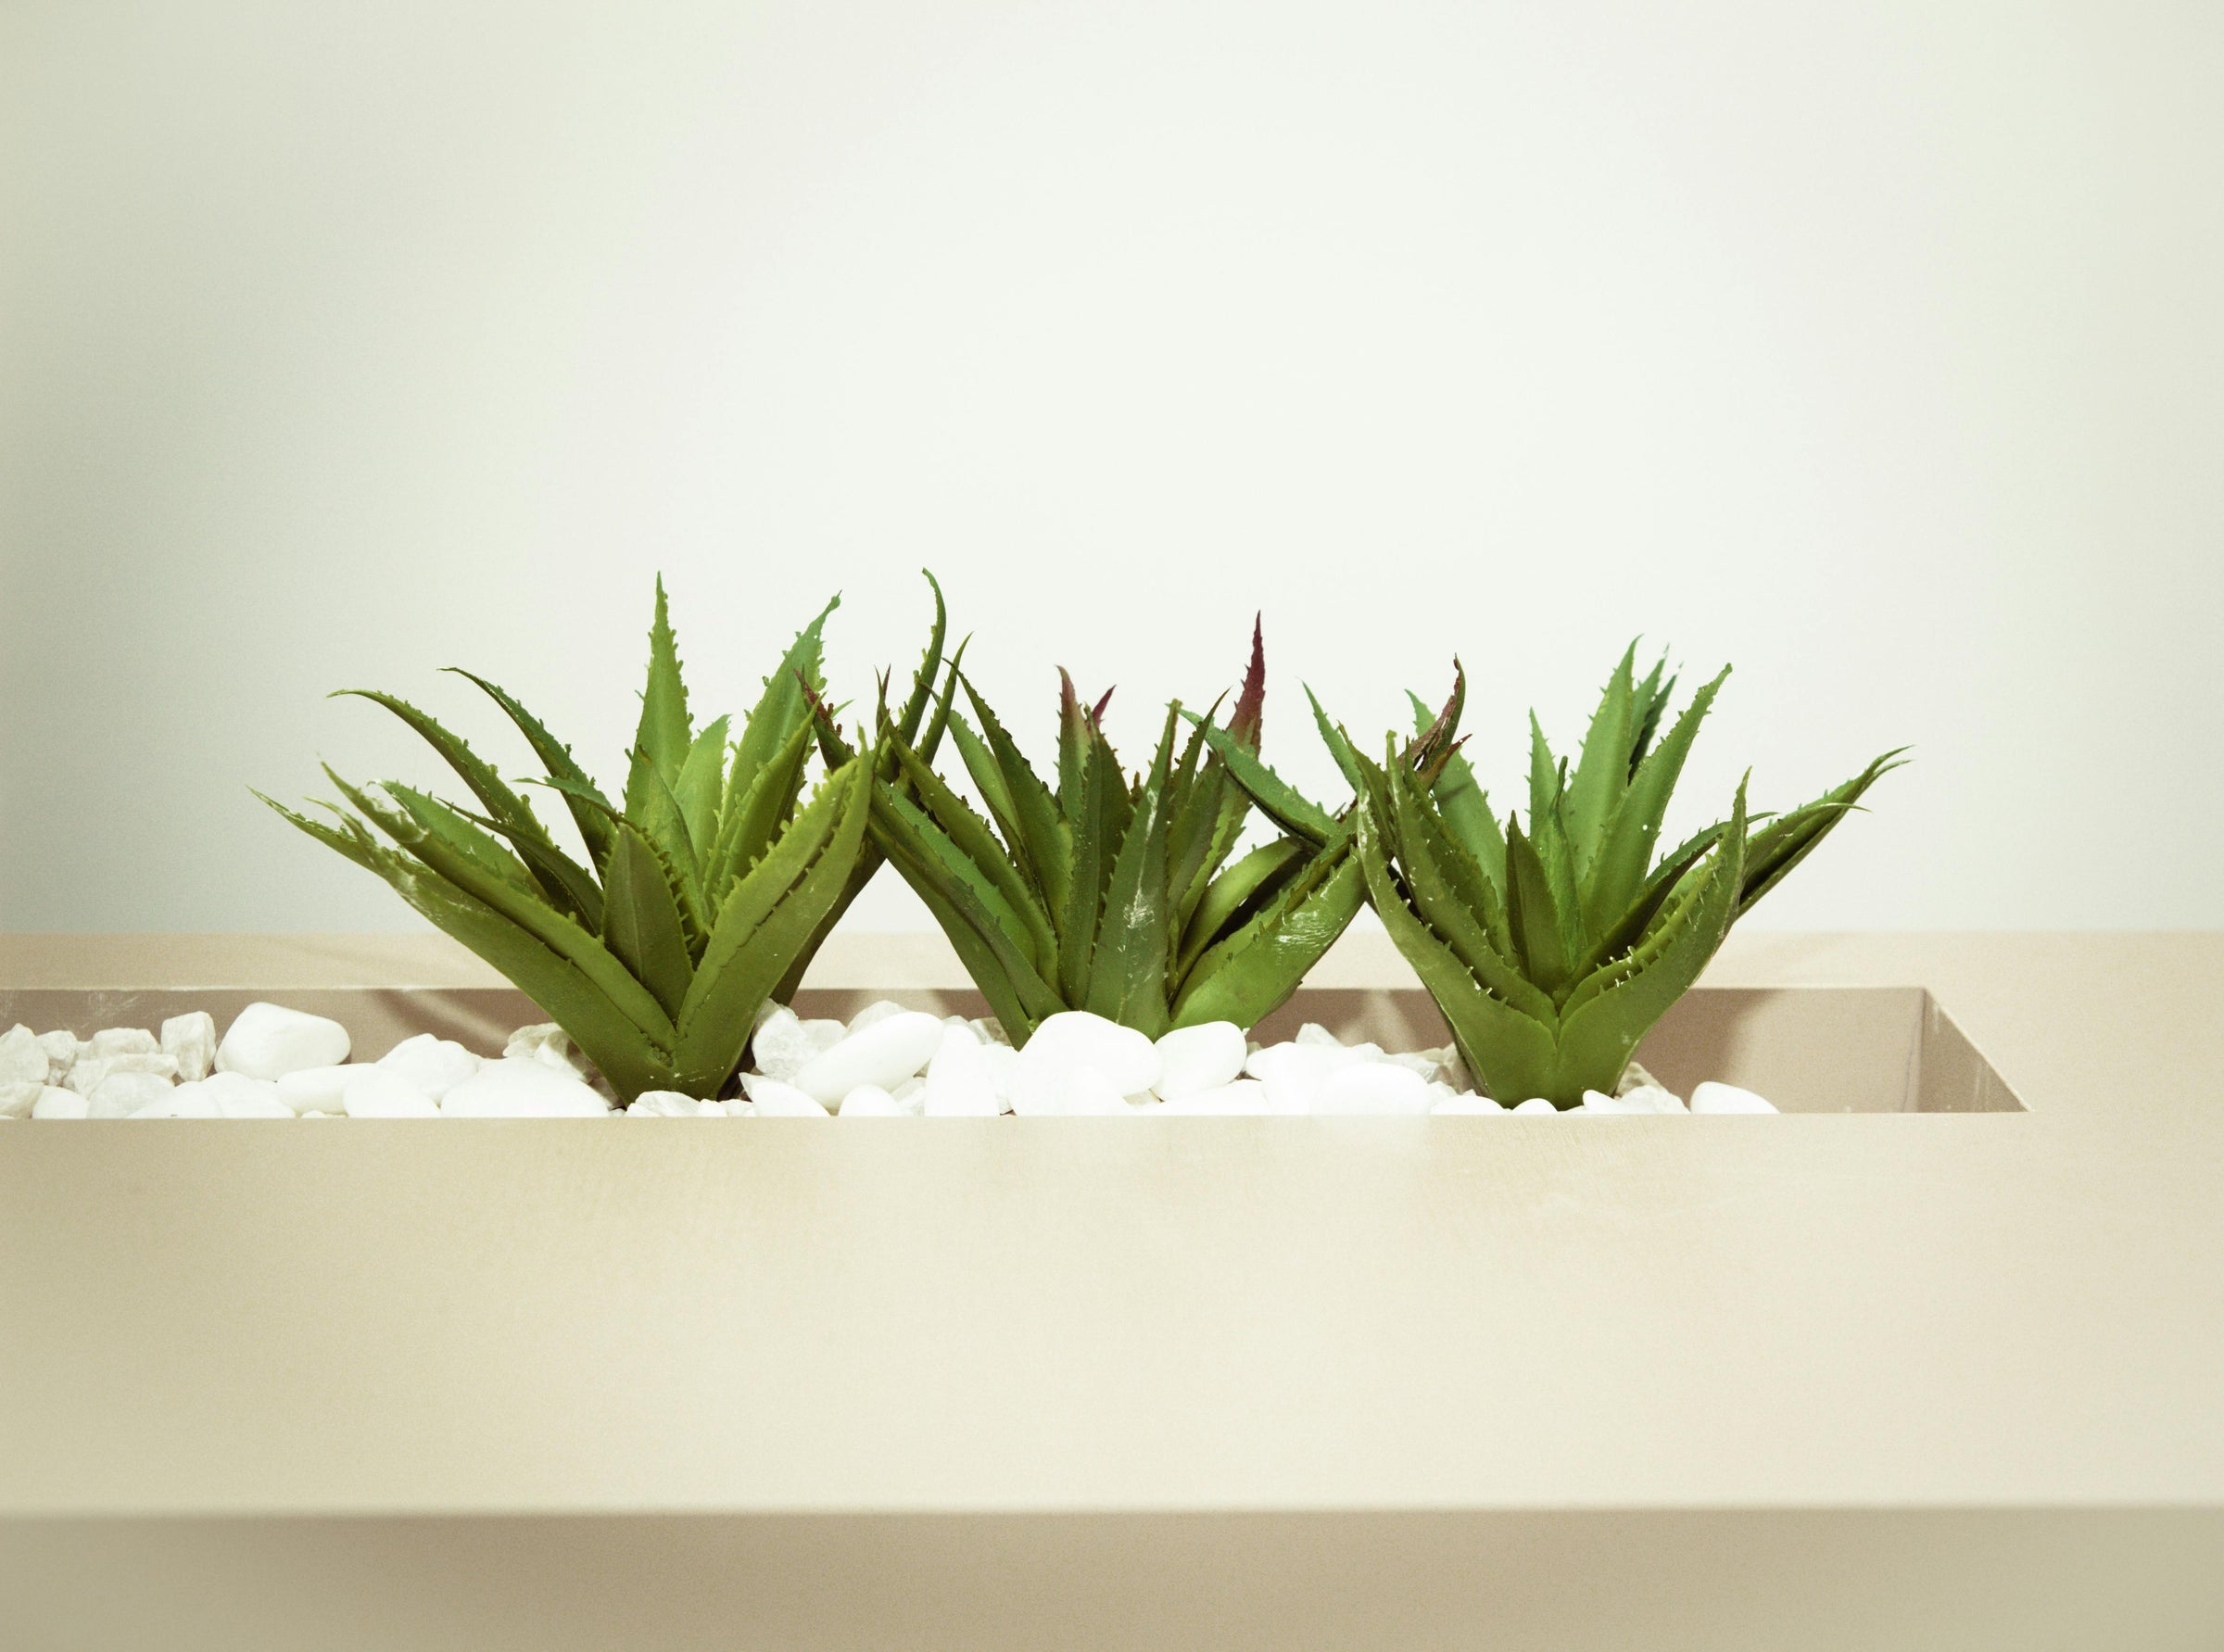 Types of Aloe Plants